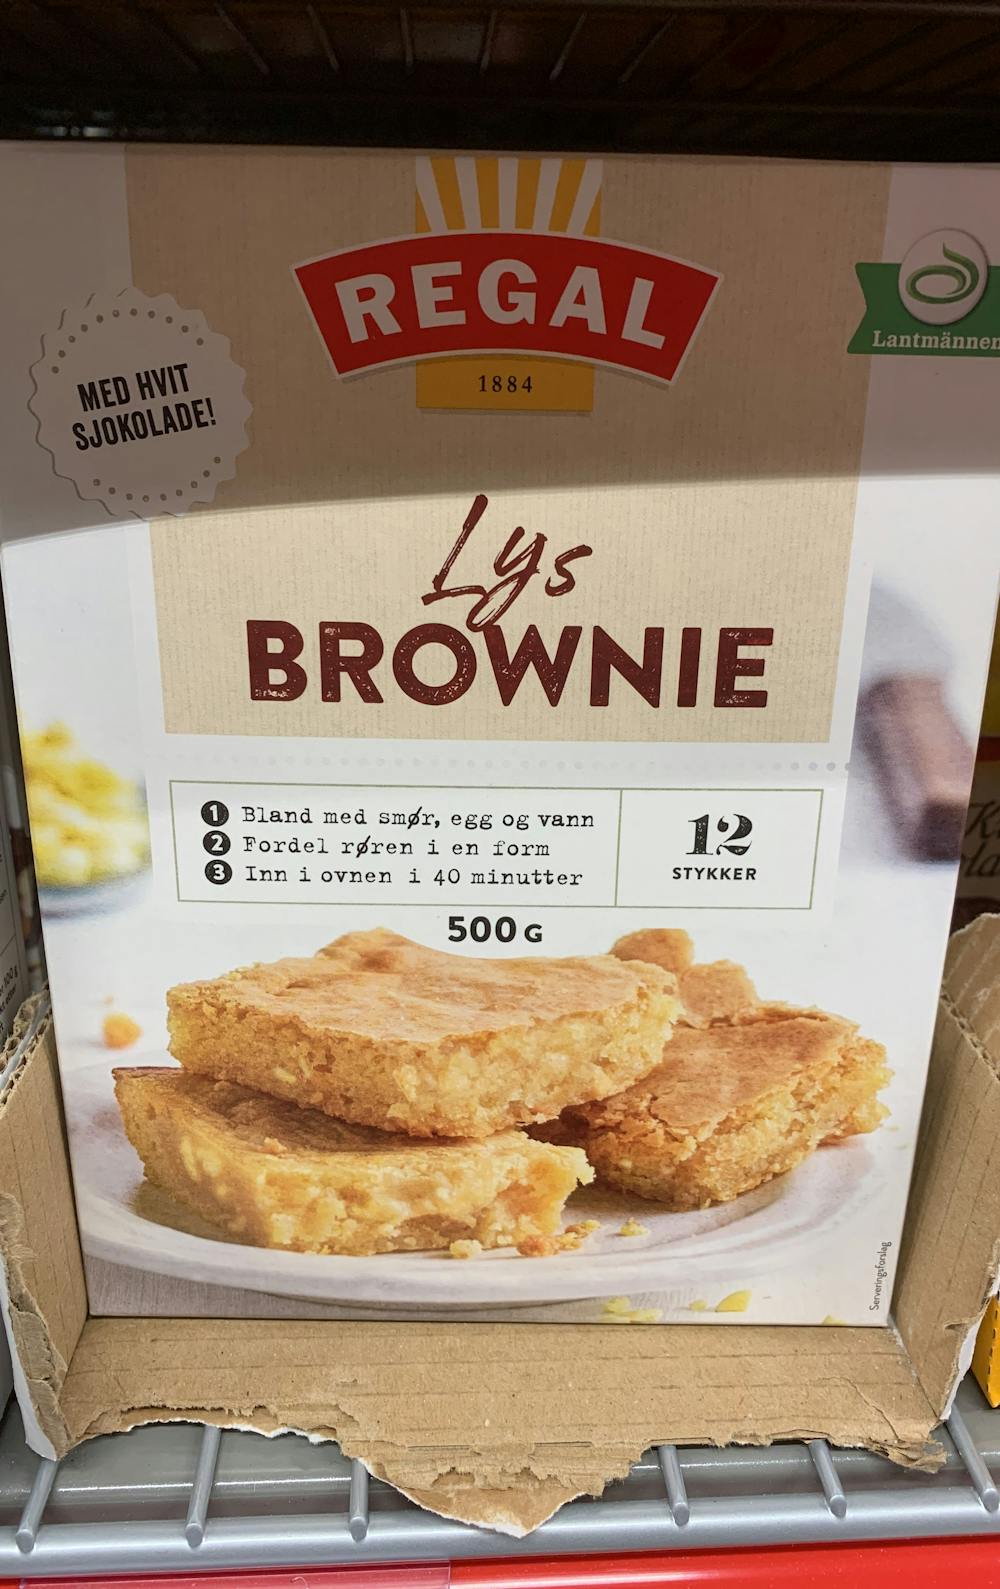 Lys brownie, Regal